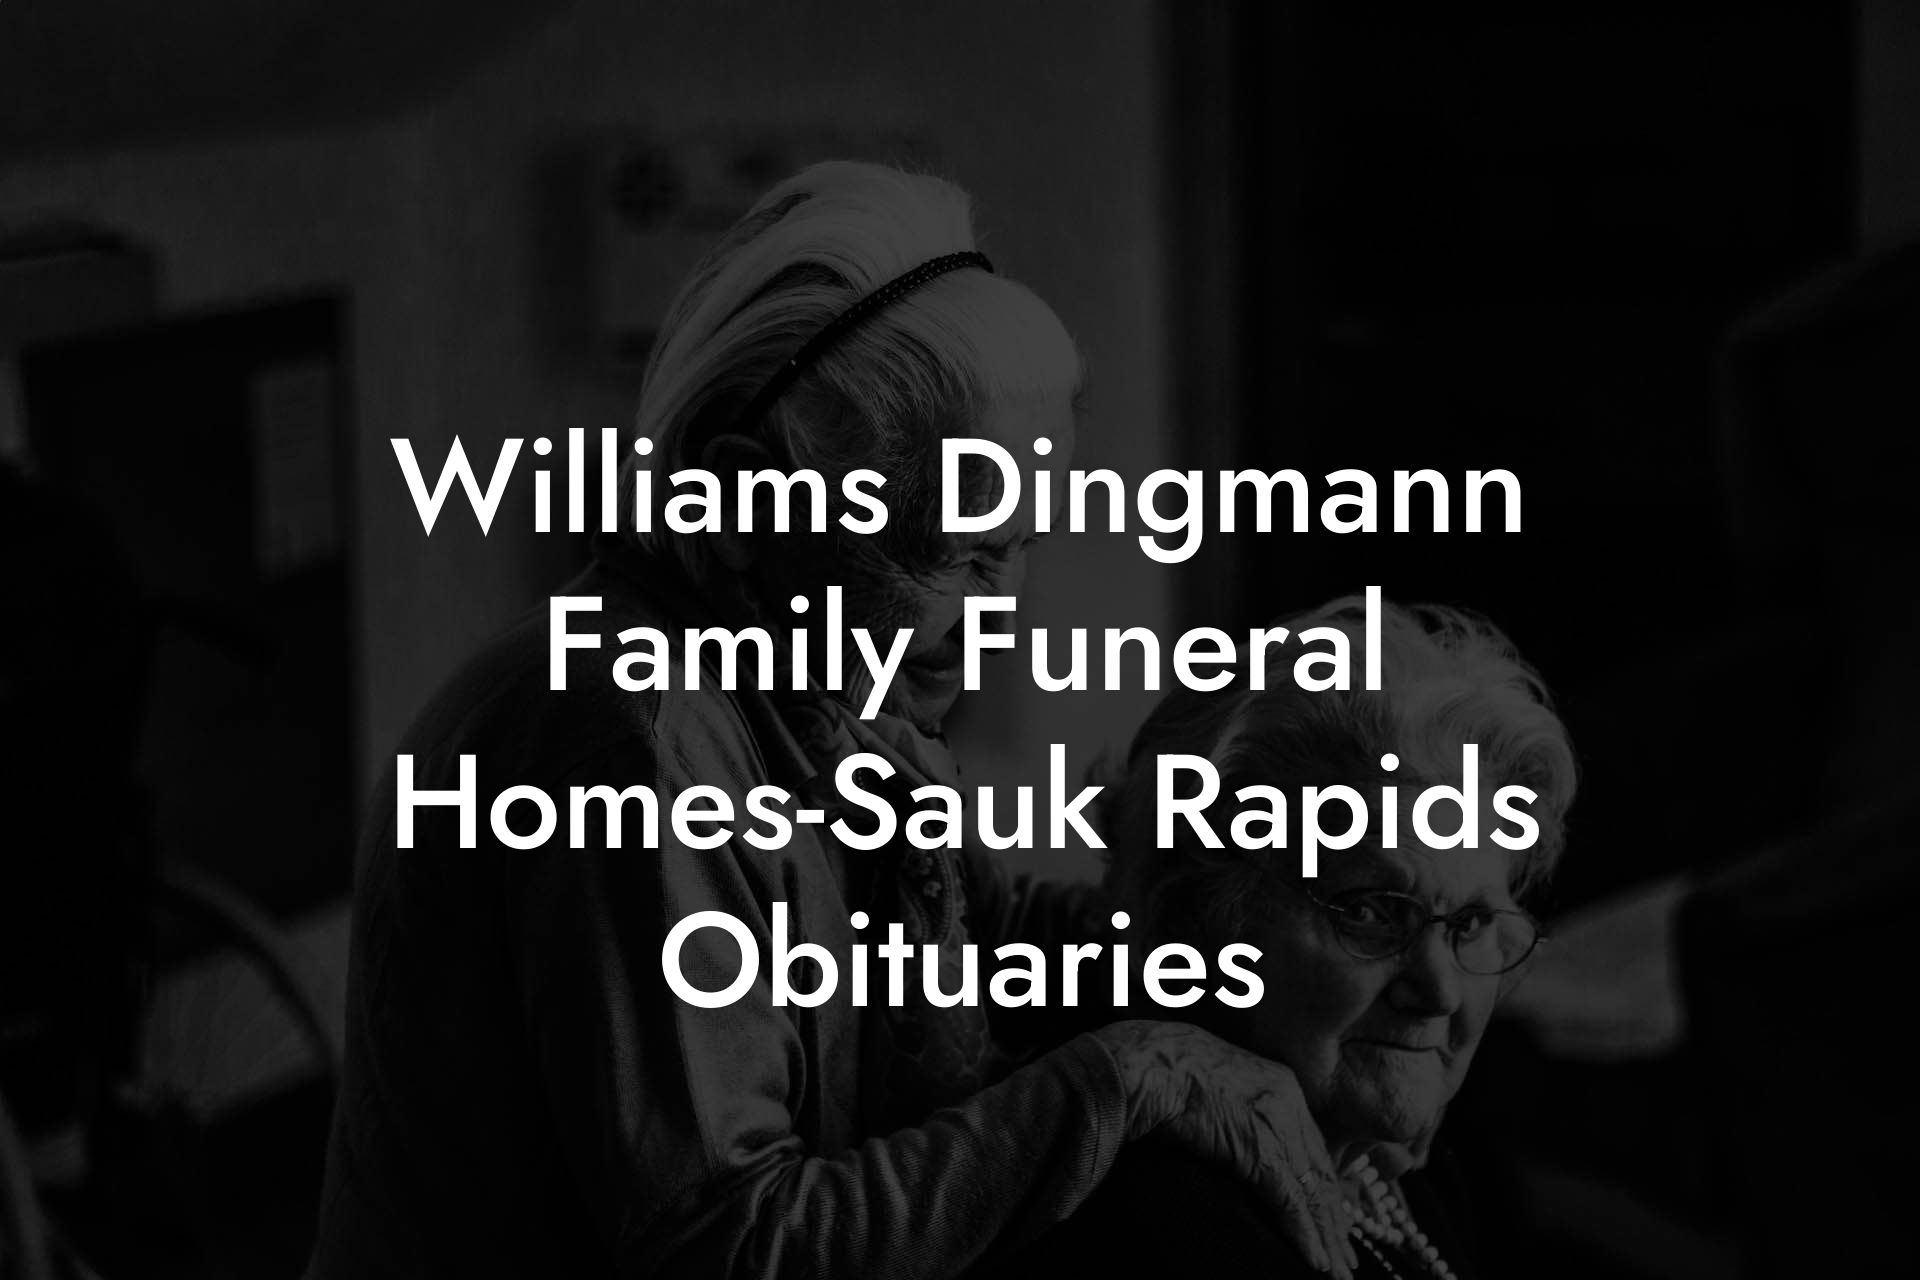 Williams Dingmann Family Funeral Homes-Sauk Rapids Obituaries